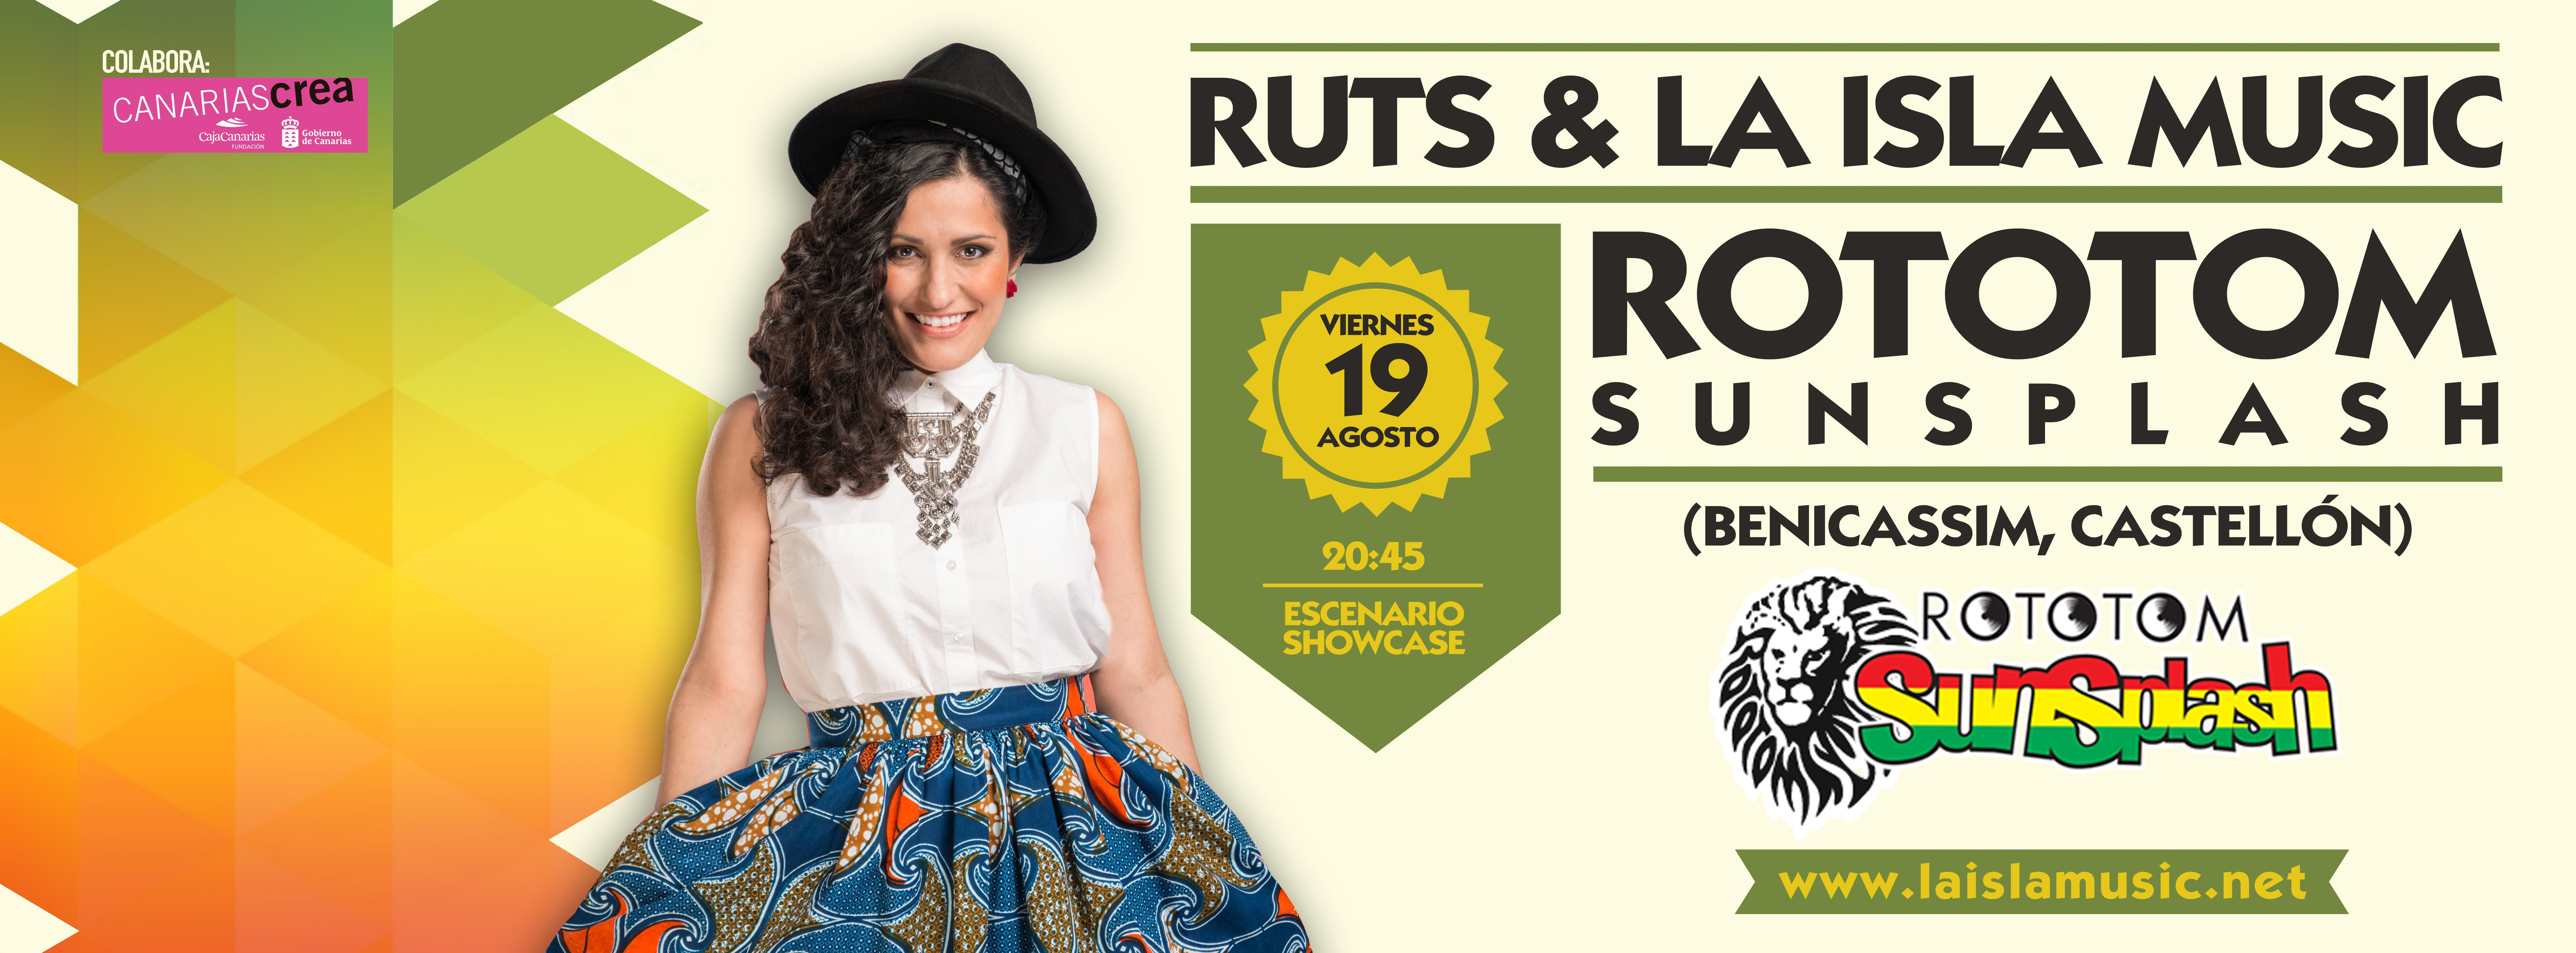 Nota de Prensa. Ruts & La Isla Music en Rototom Sunsplash 2016